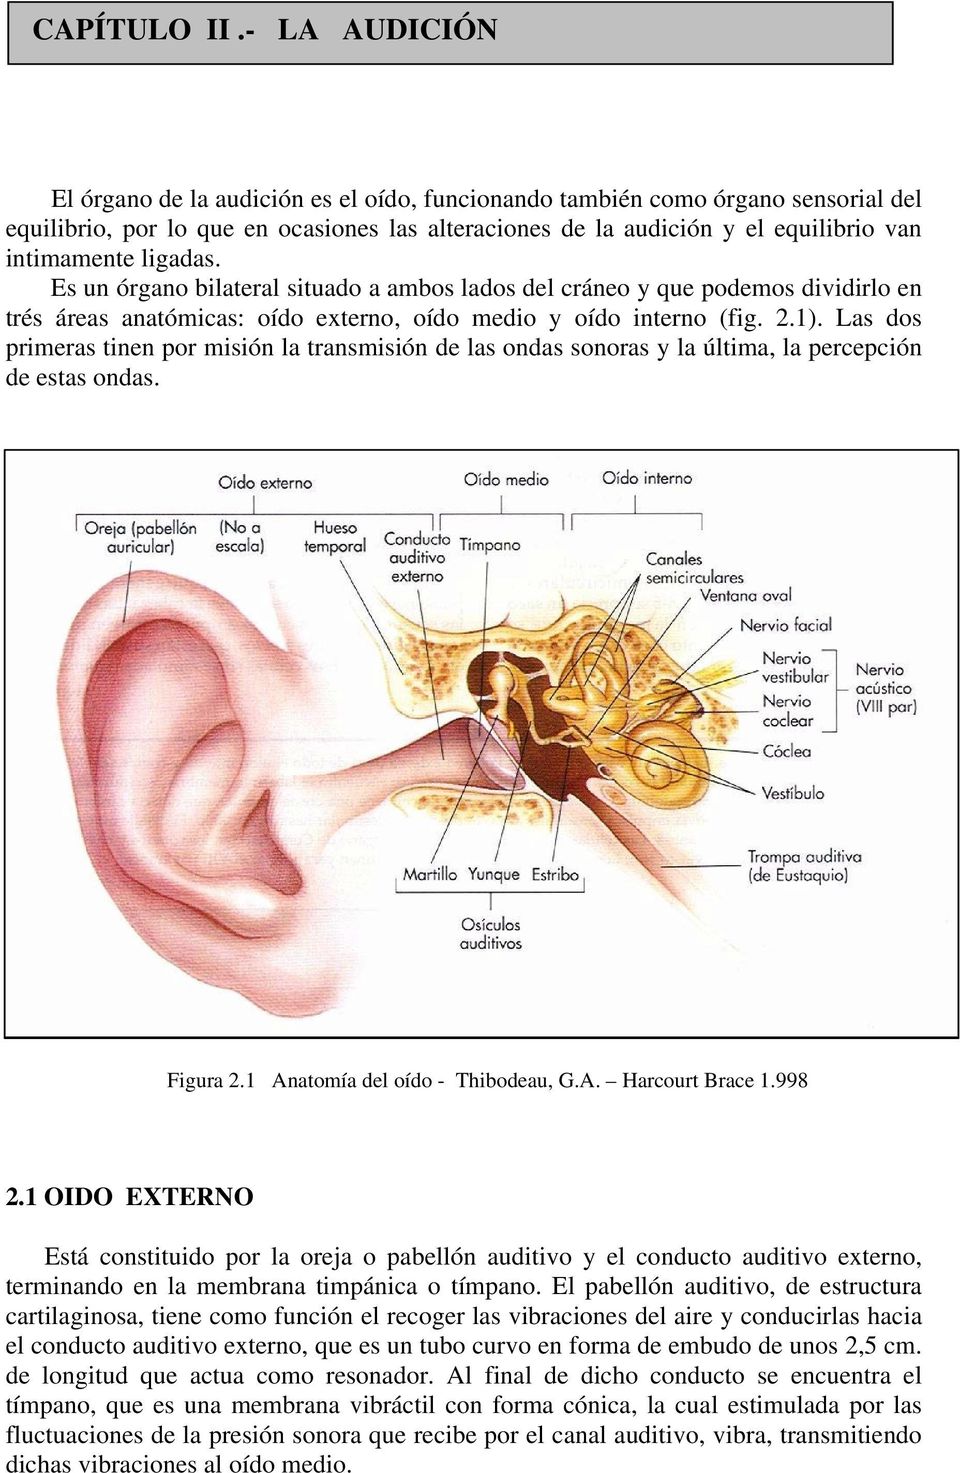 ligadas. Es un órgano bilateral situado a ambos lados del cráneo y que podemos dividirlo en trés áreas anatómicas: oído externo, oído medio y oído interno (fig. 2.1).